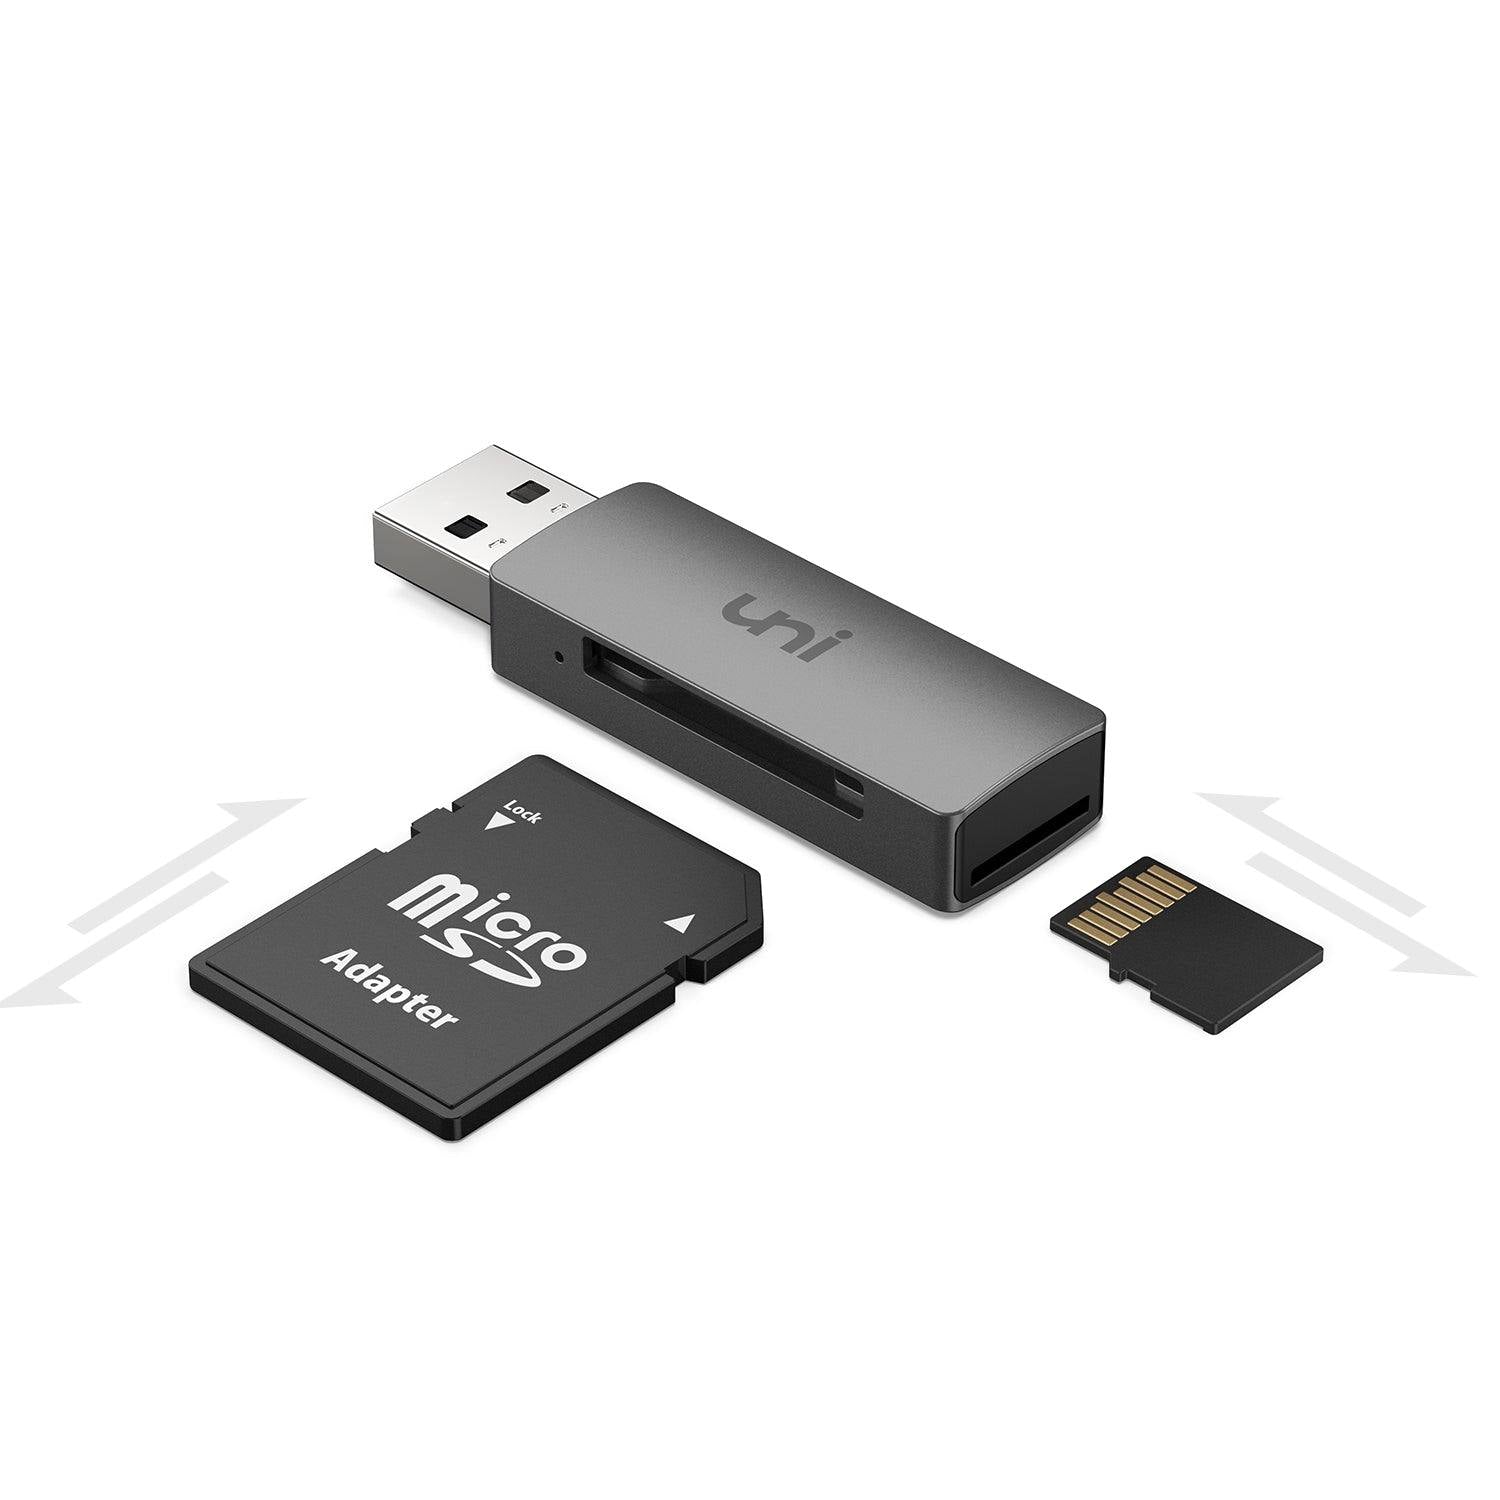 Desgracia evaporación daño uni® Card Reader, USB 3.0 to SD Card / Micro SD / TF Card Adapter